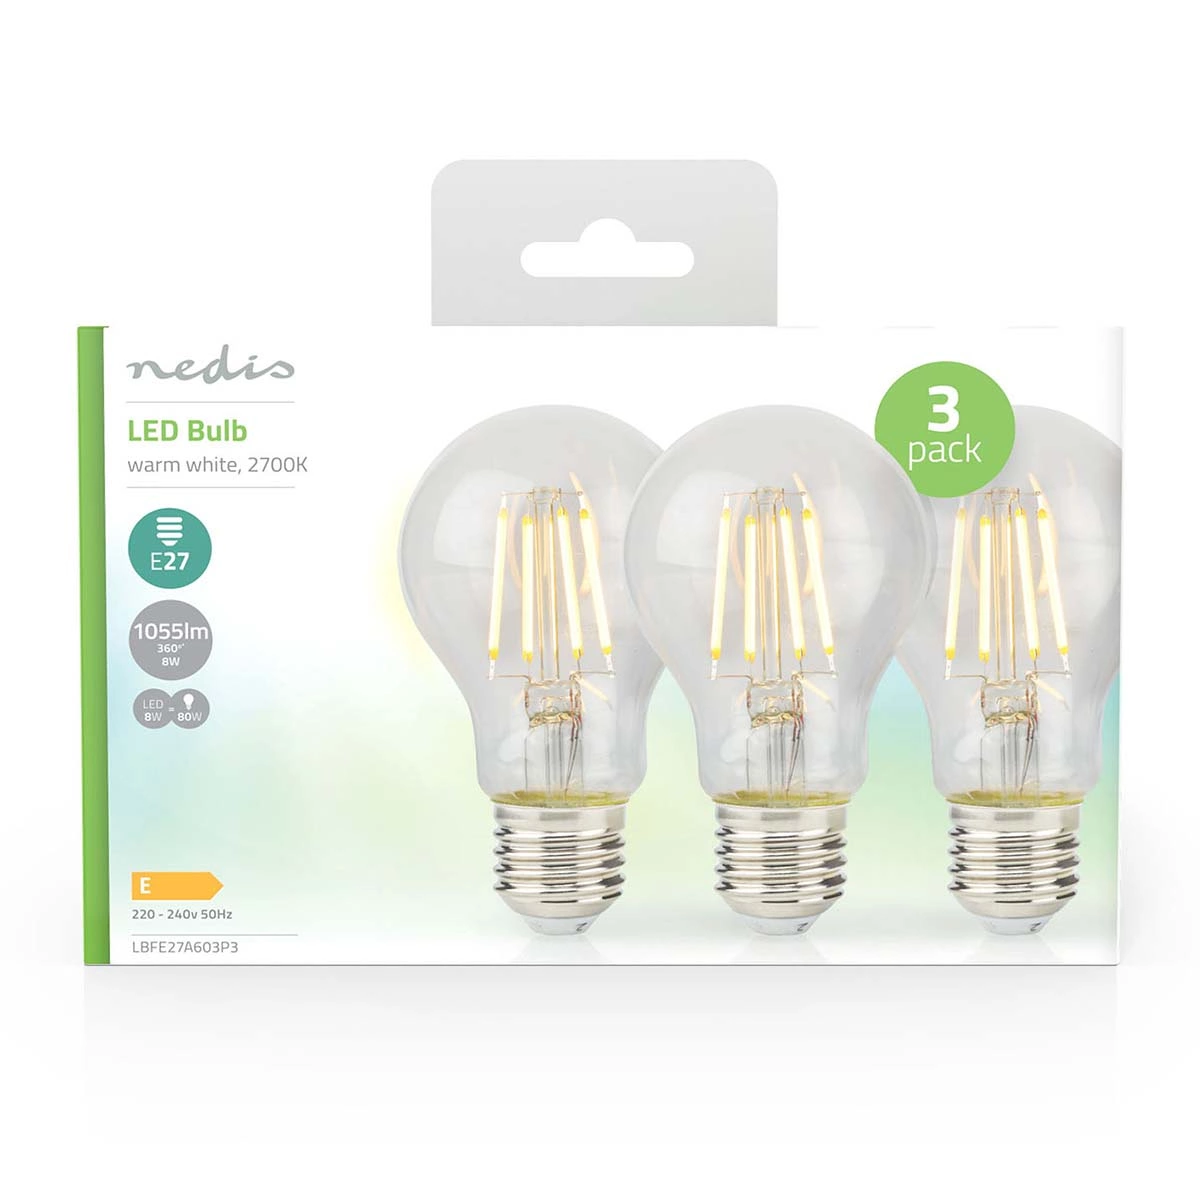 LED-Filament-Lampe E27, 3 Stück